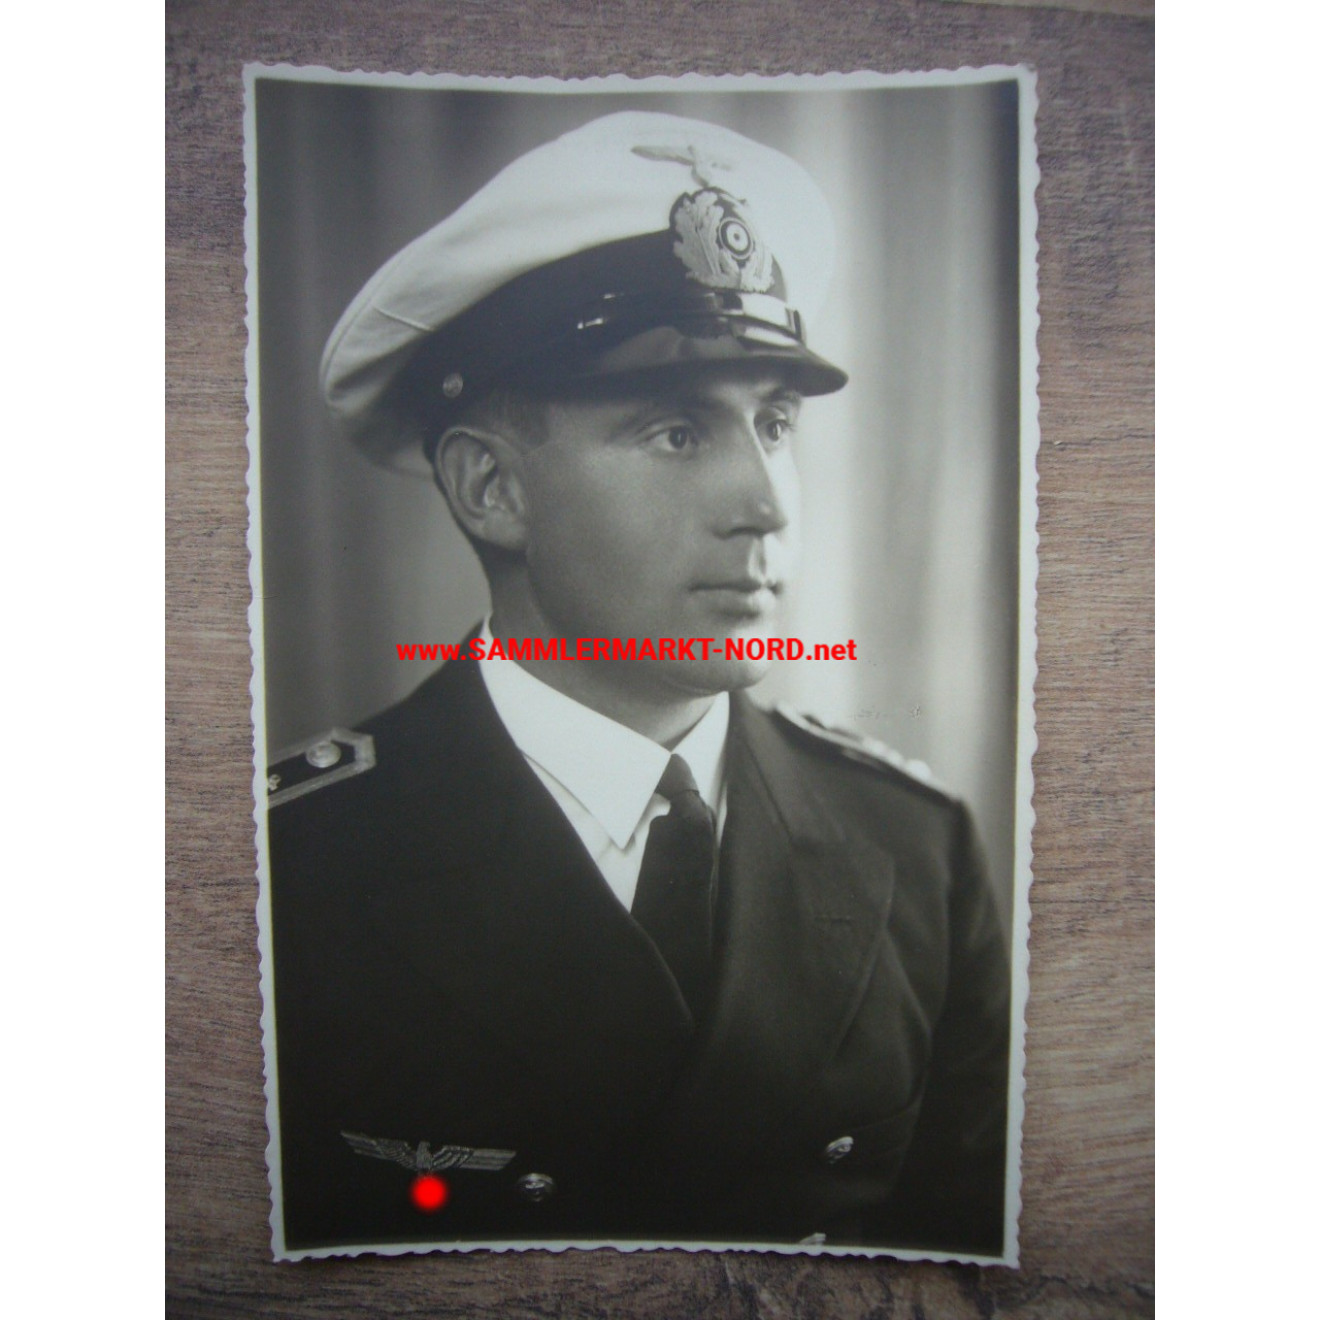 Kriegsmarine officer with white summer visor cap